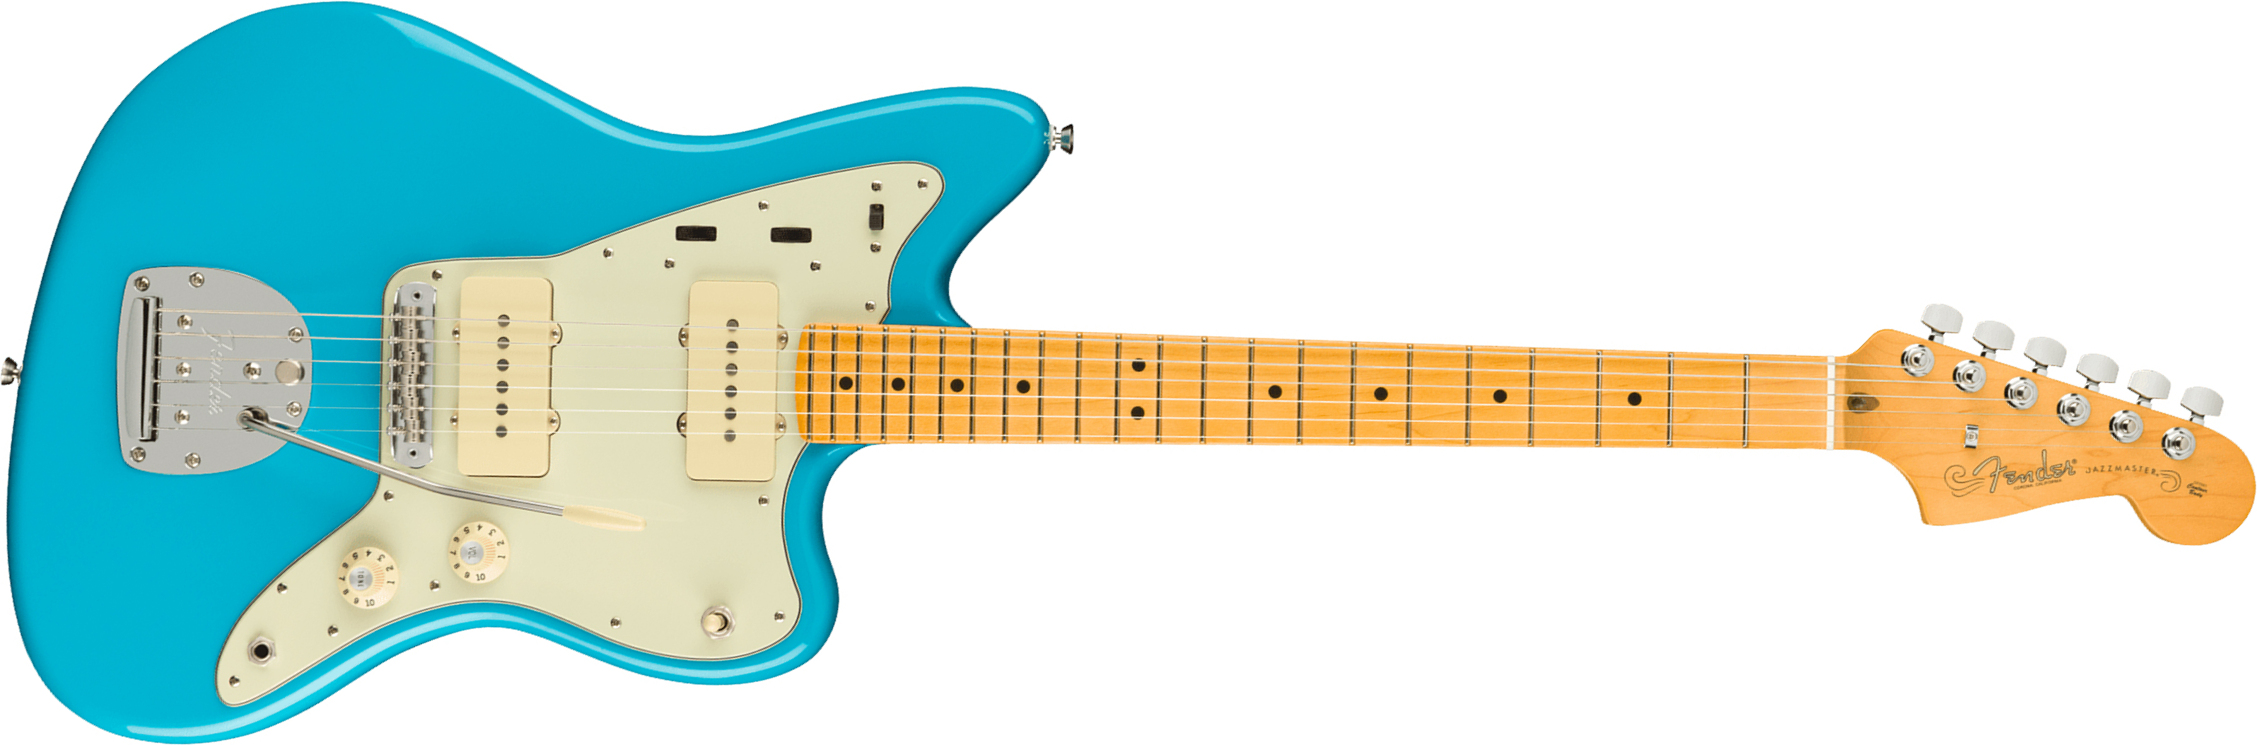 Fender Jazzmaster American Professional Ii Usa Rw - Miami Blue - Retro-Rock-E-Gitarre - Main picture